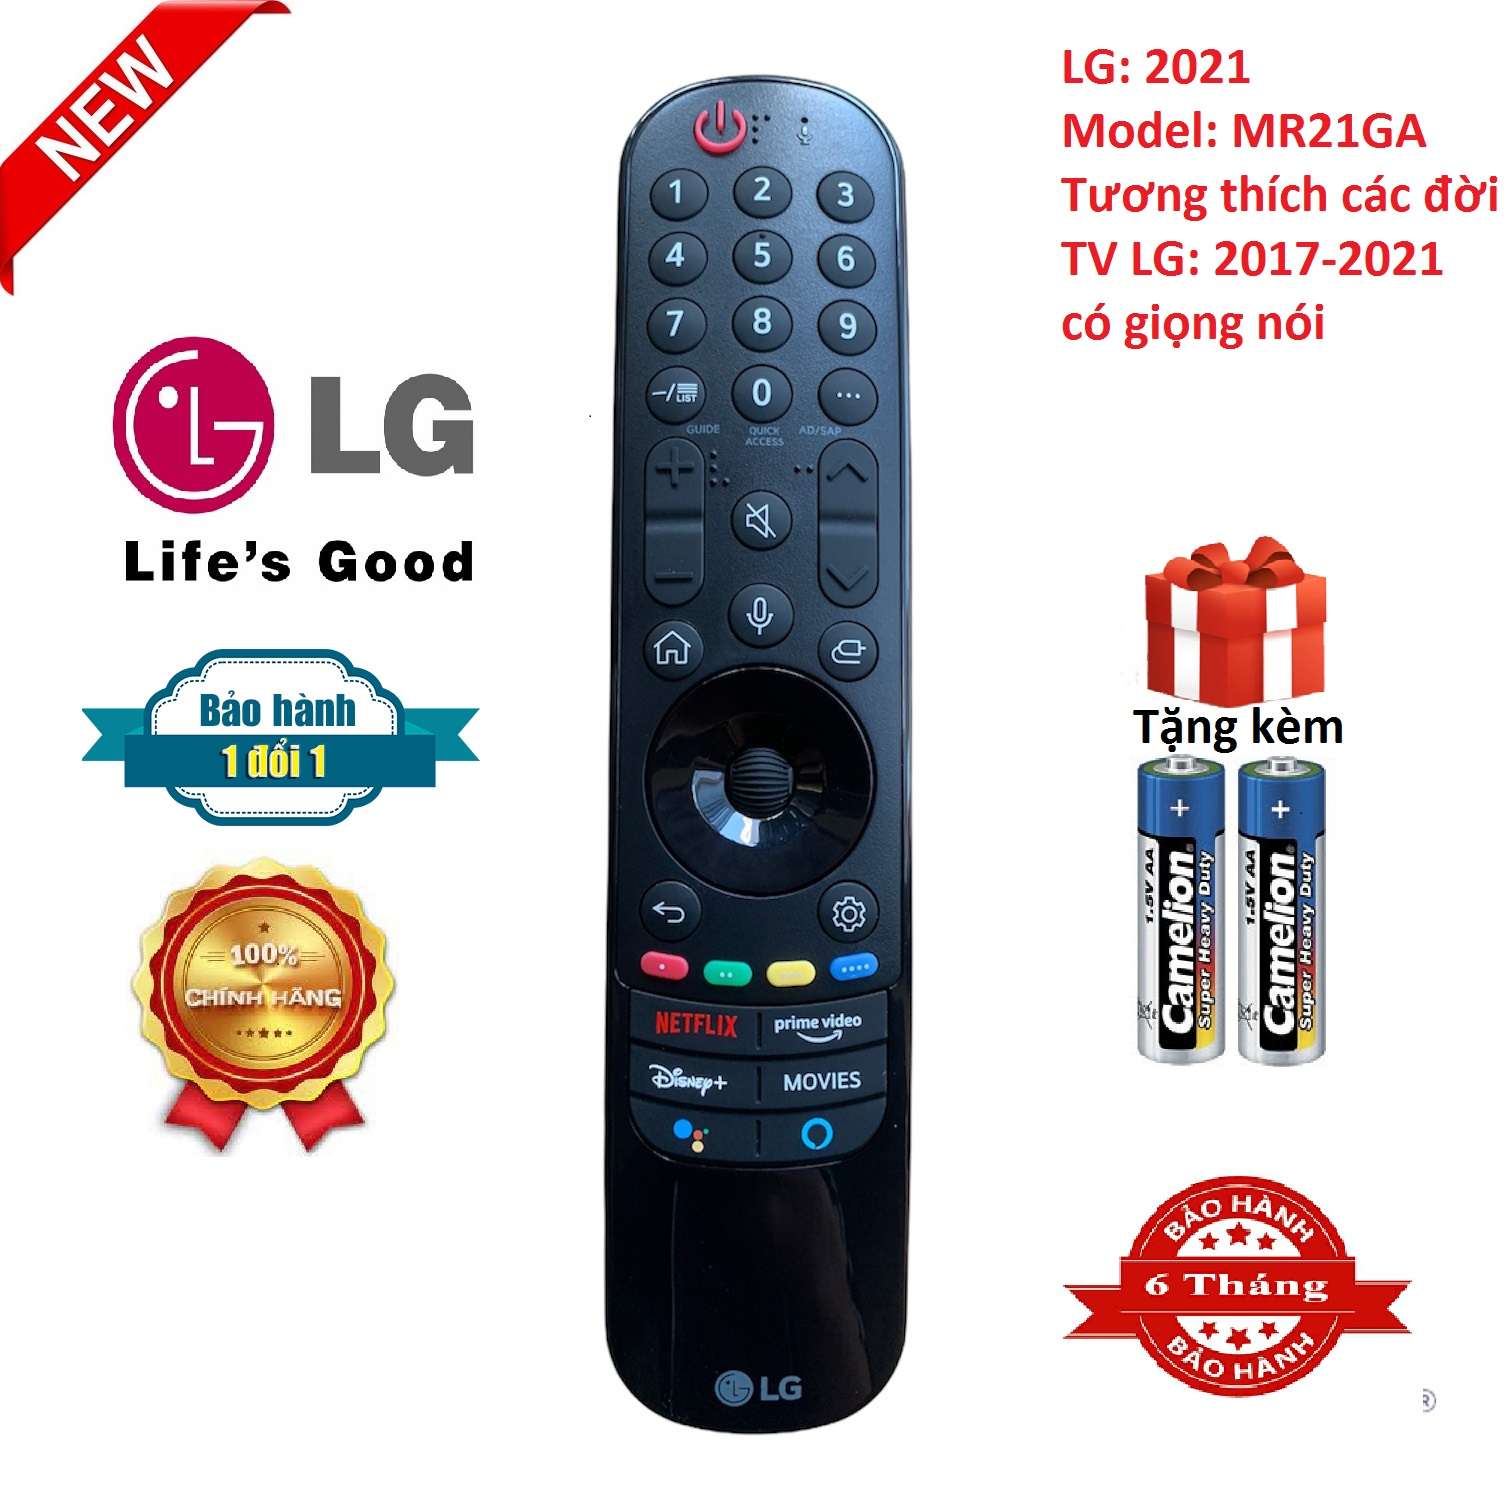 Điều khiển tivi LG giọng nói MR20GA đời 2021 Chính hãng lg thông minh có giọng nói [ BH đổi mới tặng kèm pin ] remote tv lg có giọng nói dùng chung các đời lg 2017- 2021 MR21GA